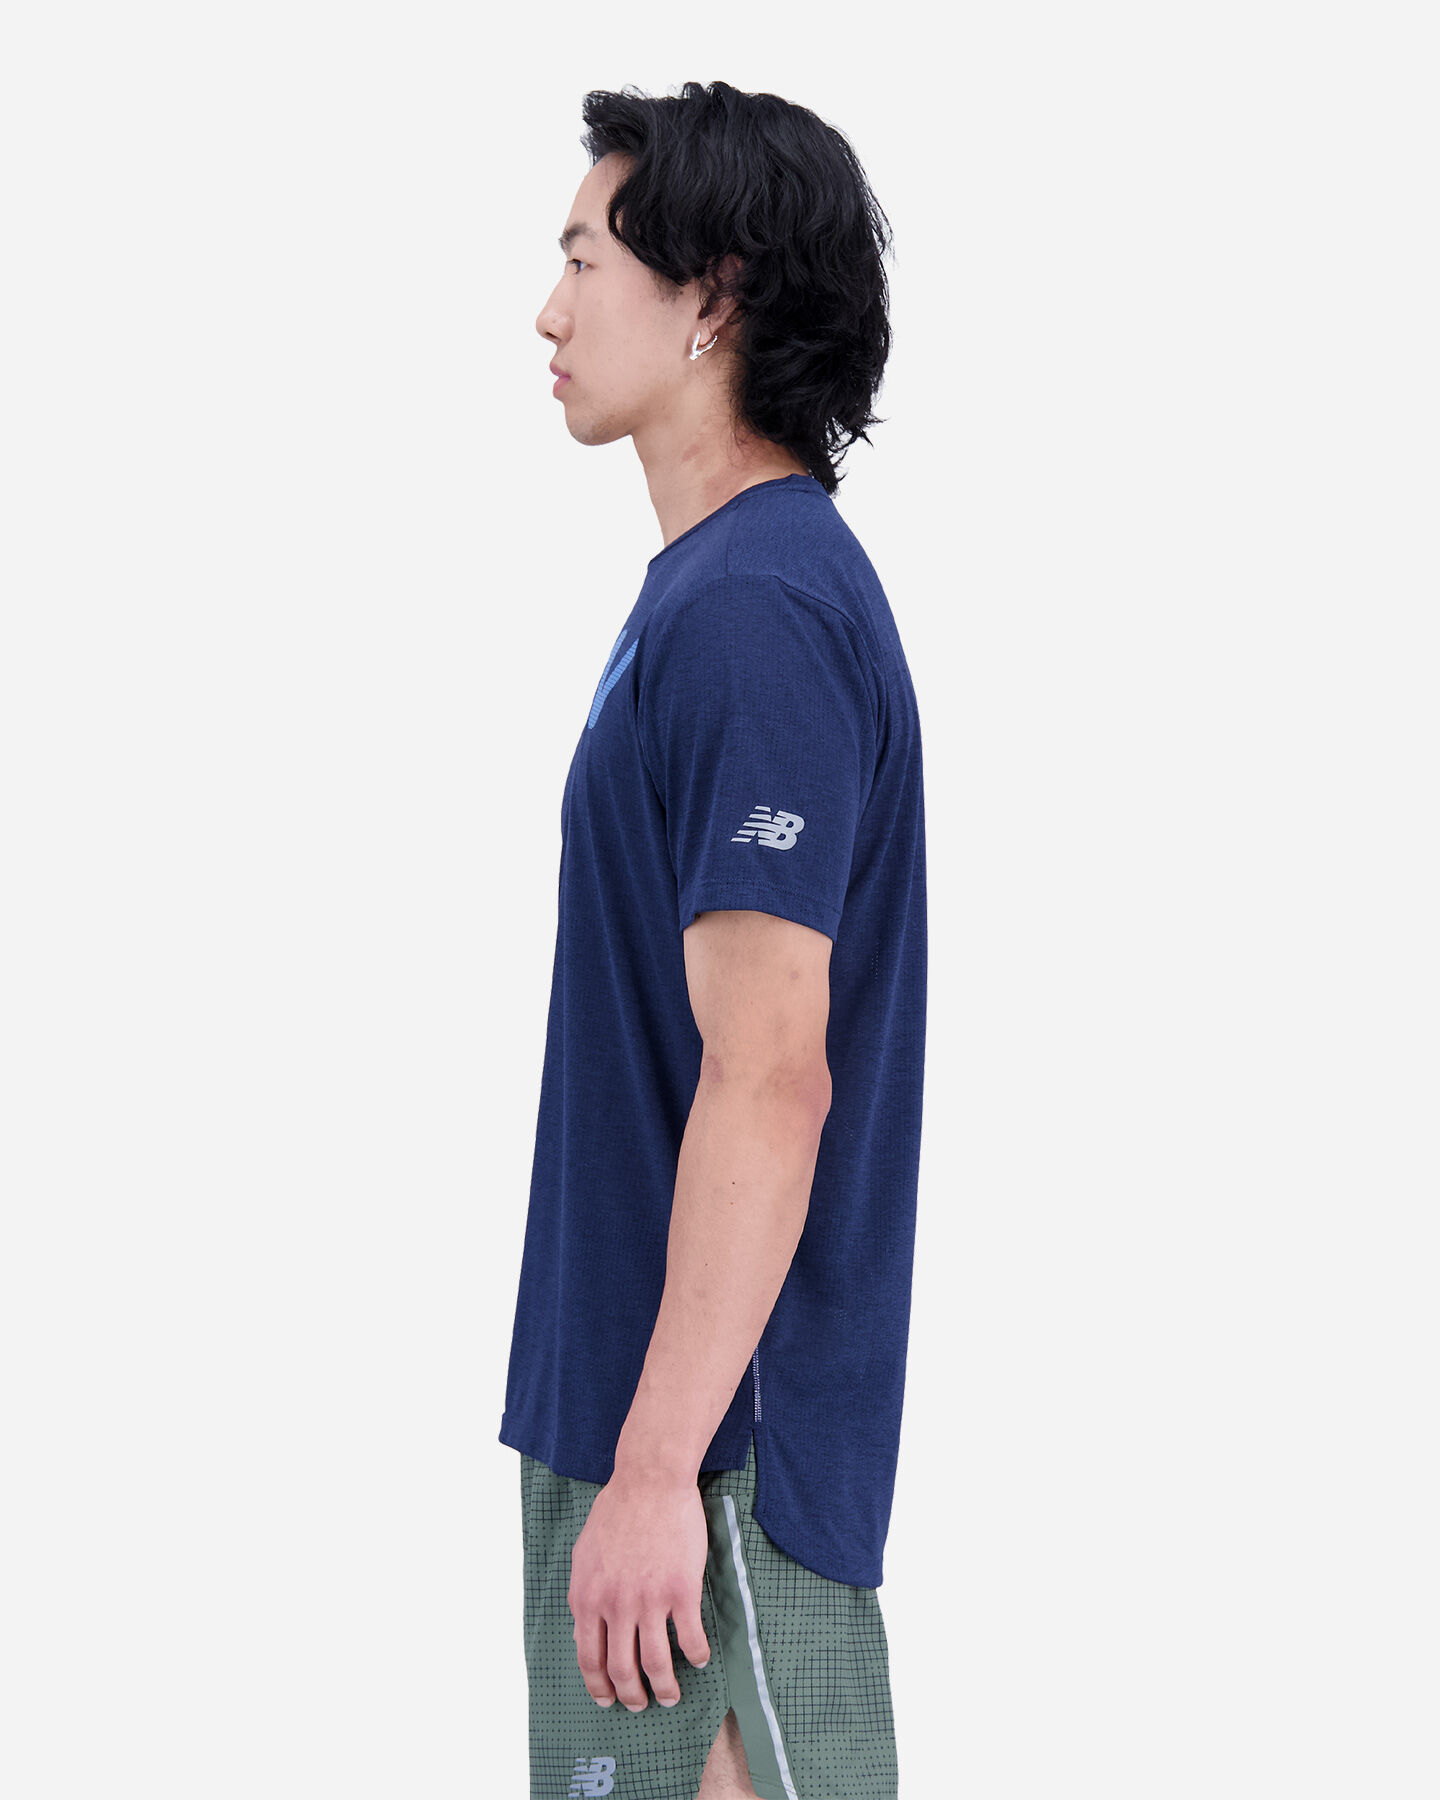  T-Shirt running NEW BALANCE GRAPHIC IMPACT RUN M S5533628|-|XL* scatto 1